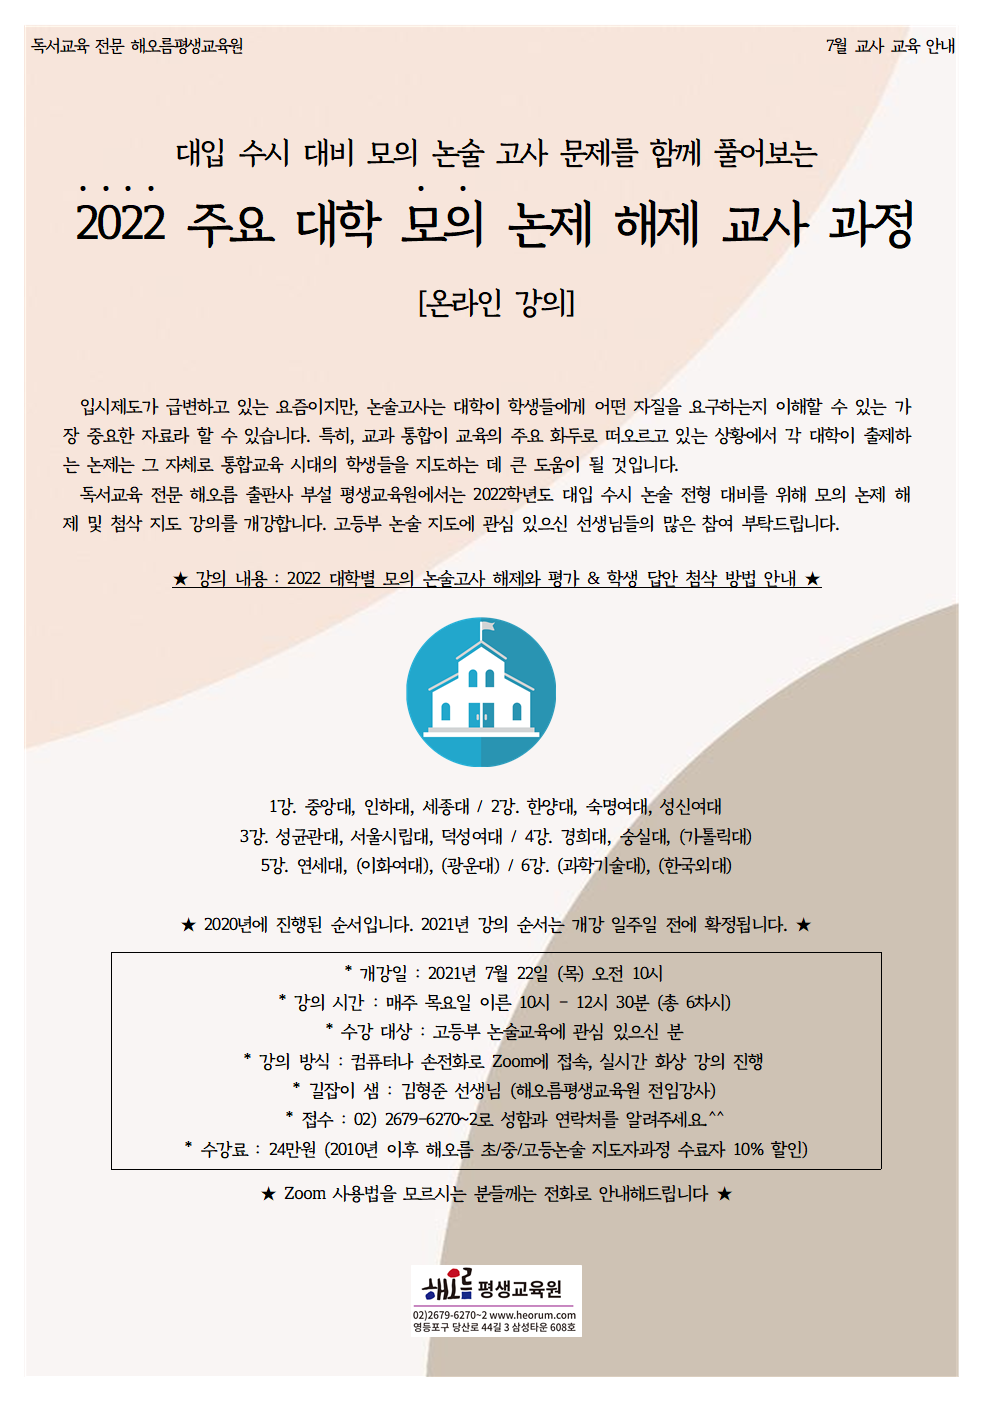 2021-07-22-모의논제해제001.png